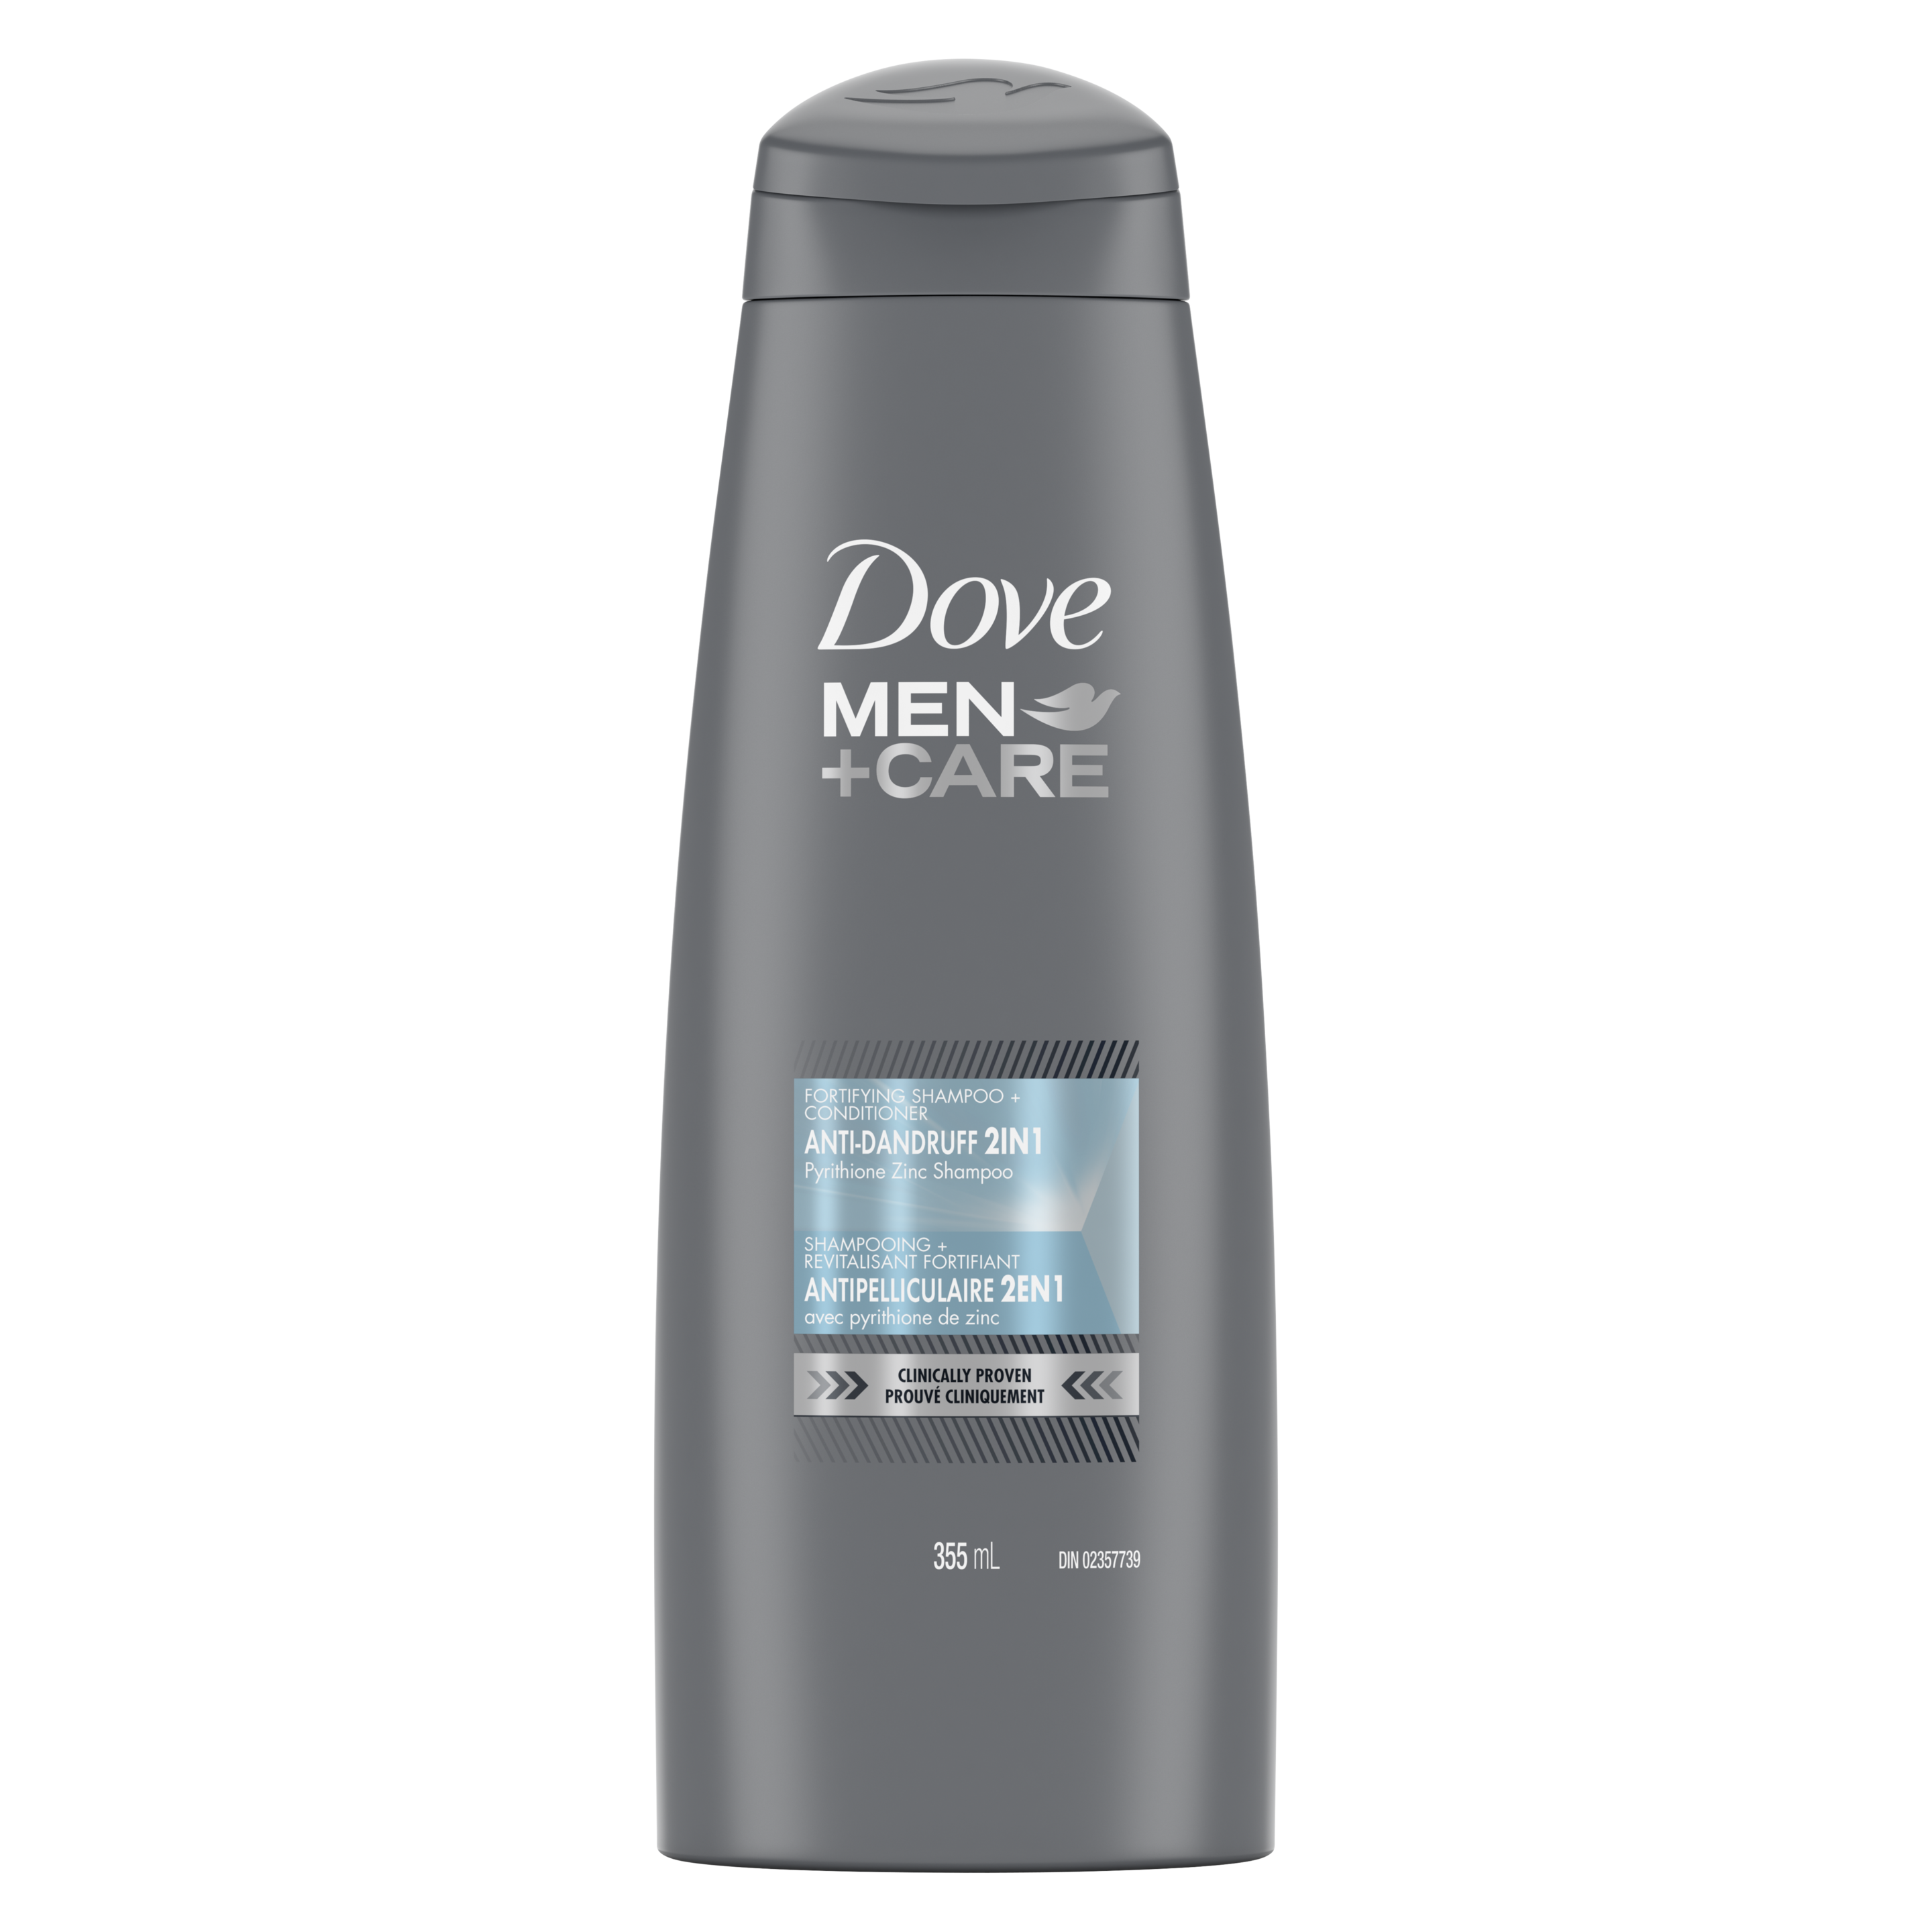 Men+Care Anti-Dandruff Shampoo and Conditioner 355ml Front